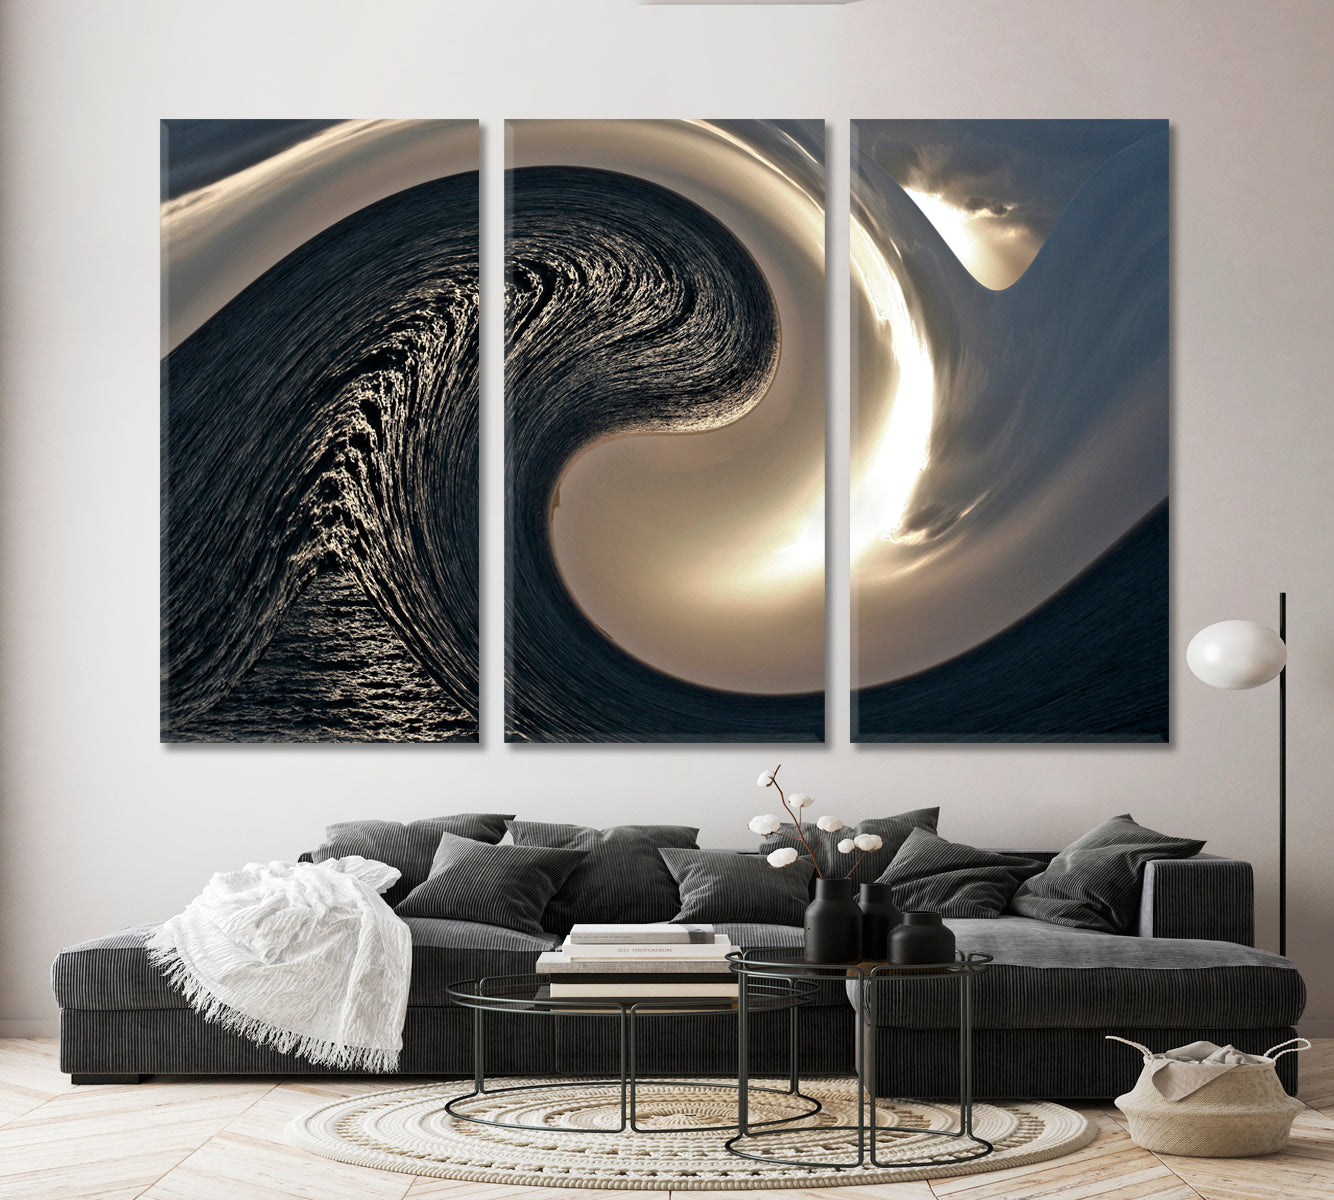 WAVE Abstract Yin Yang Symbol Abstract Art Print Artesty 3 panels 36" x 24" 